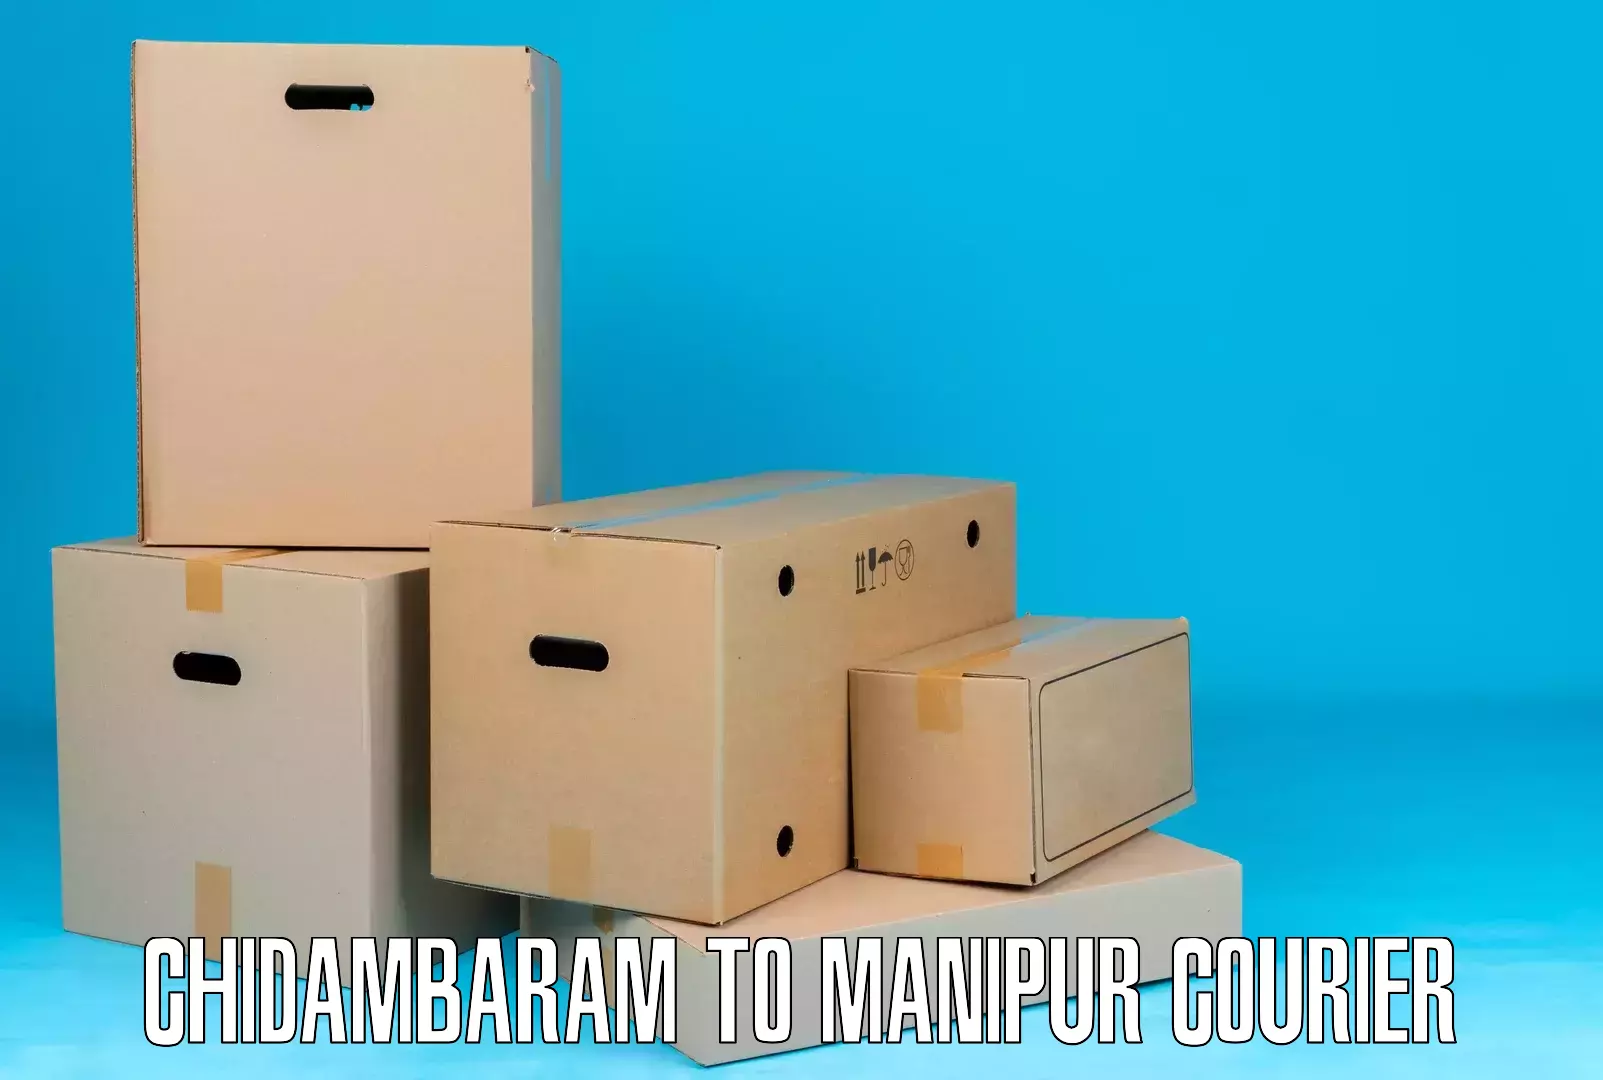 Reliable courier service Chidambaram to Churachandpur